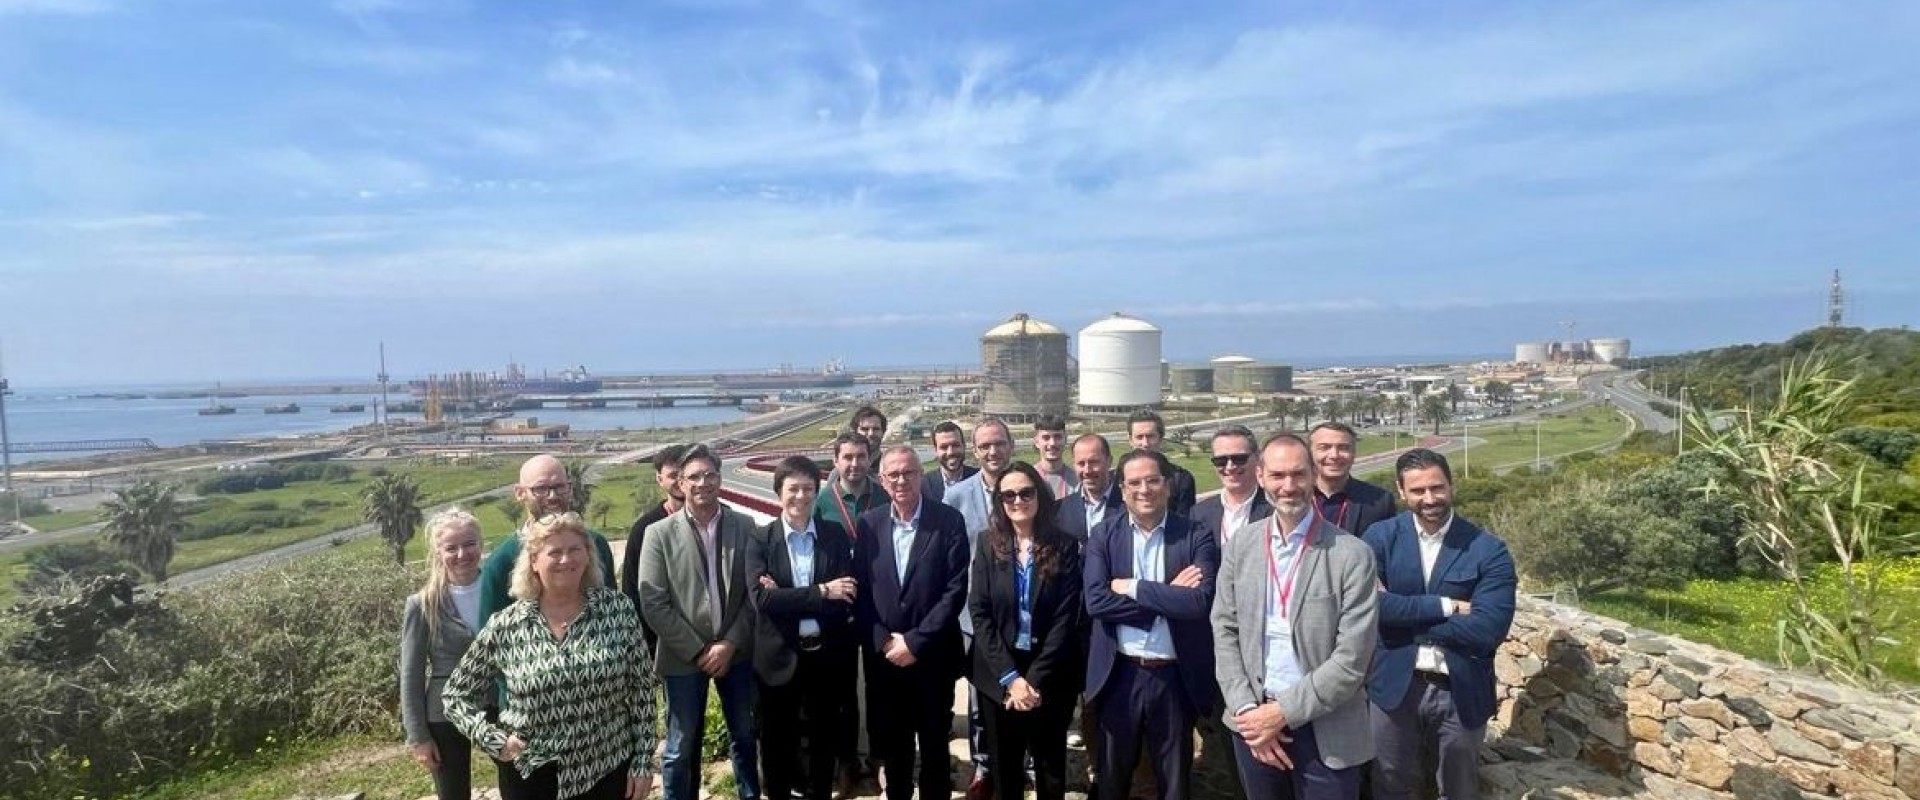 Nantes Saint-Nazaire Port accompagne une délégation régionale au Portugal et en Espagne